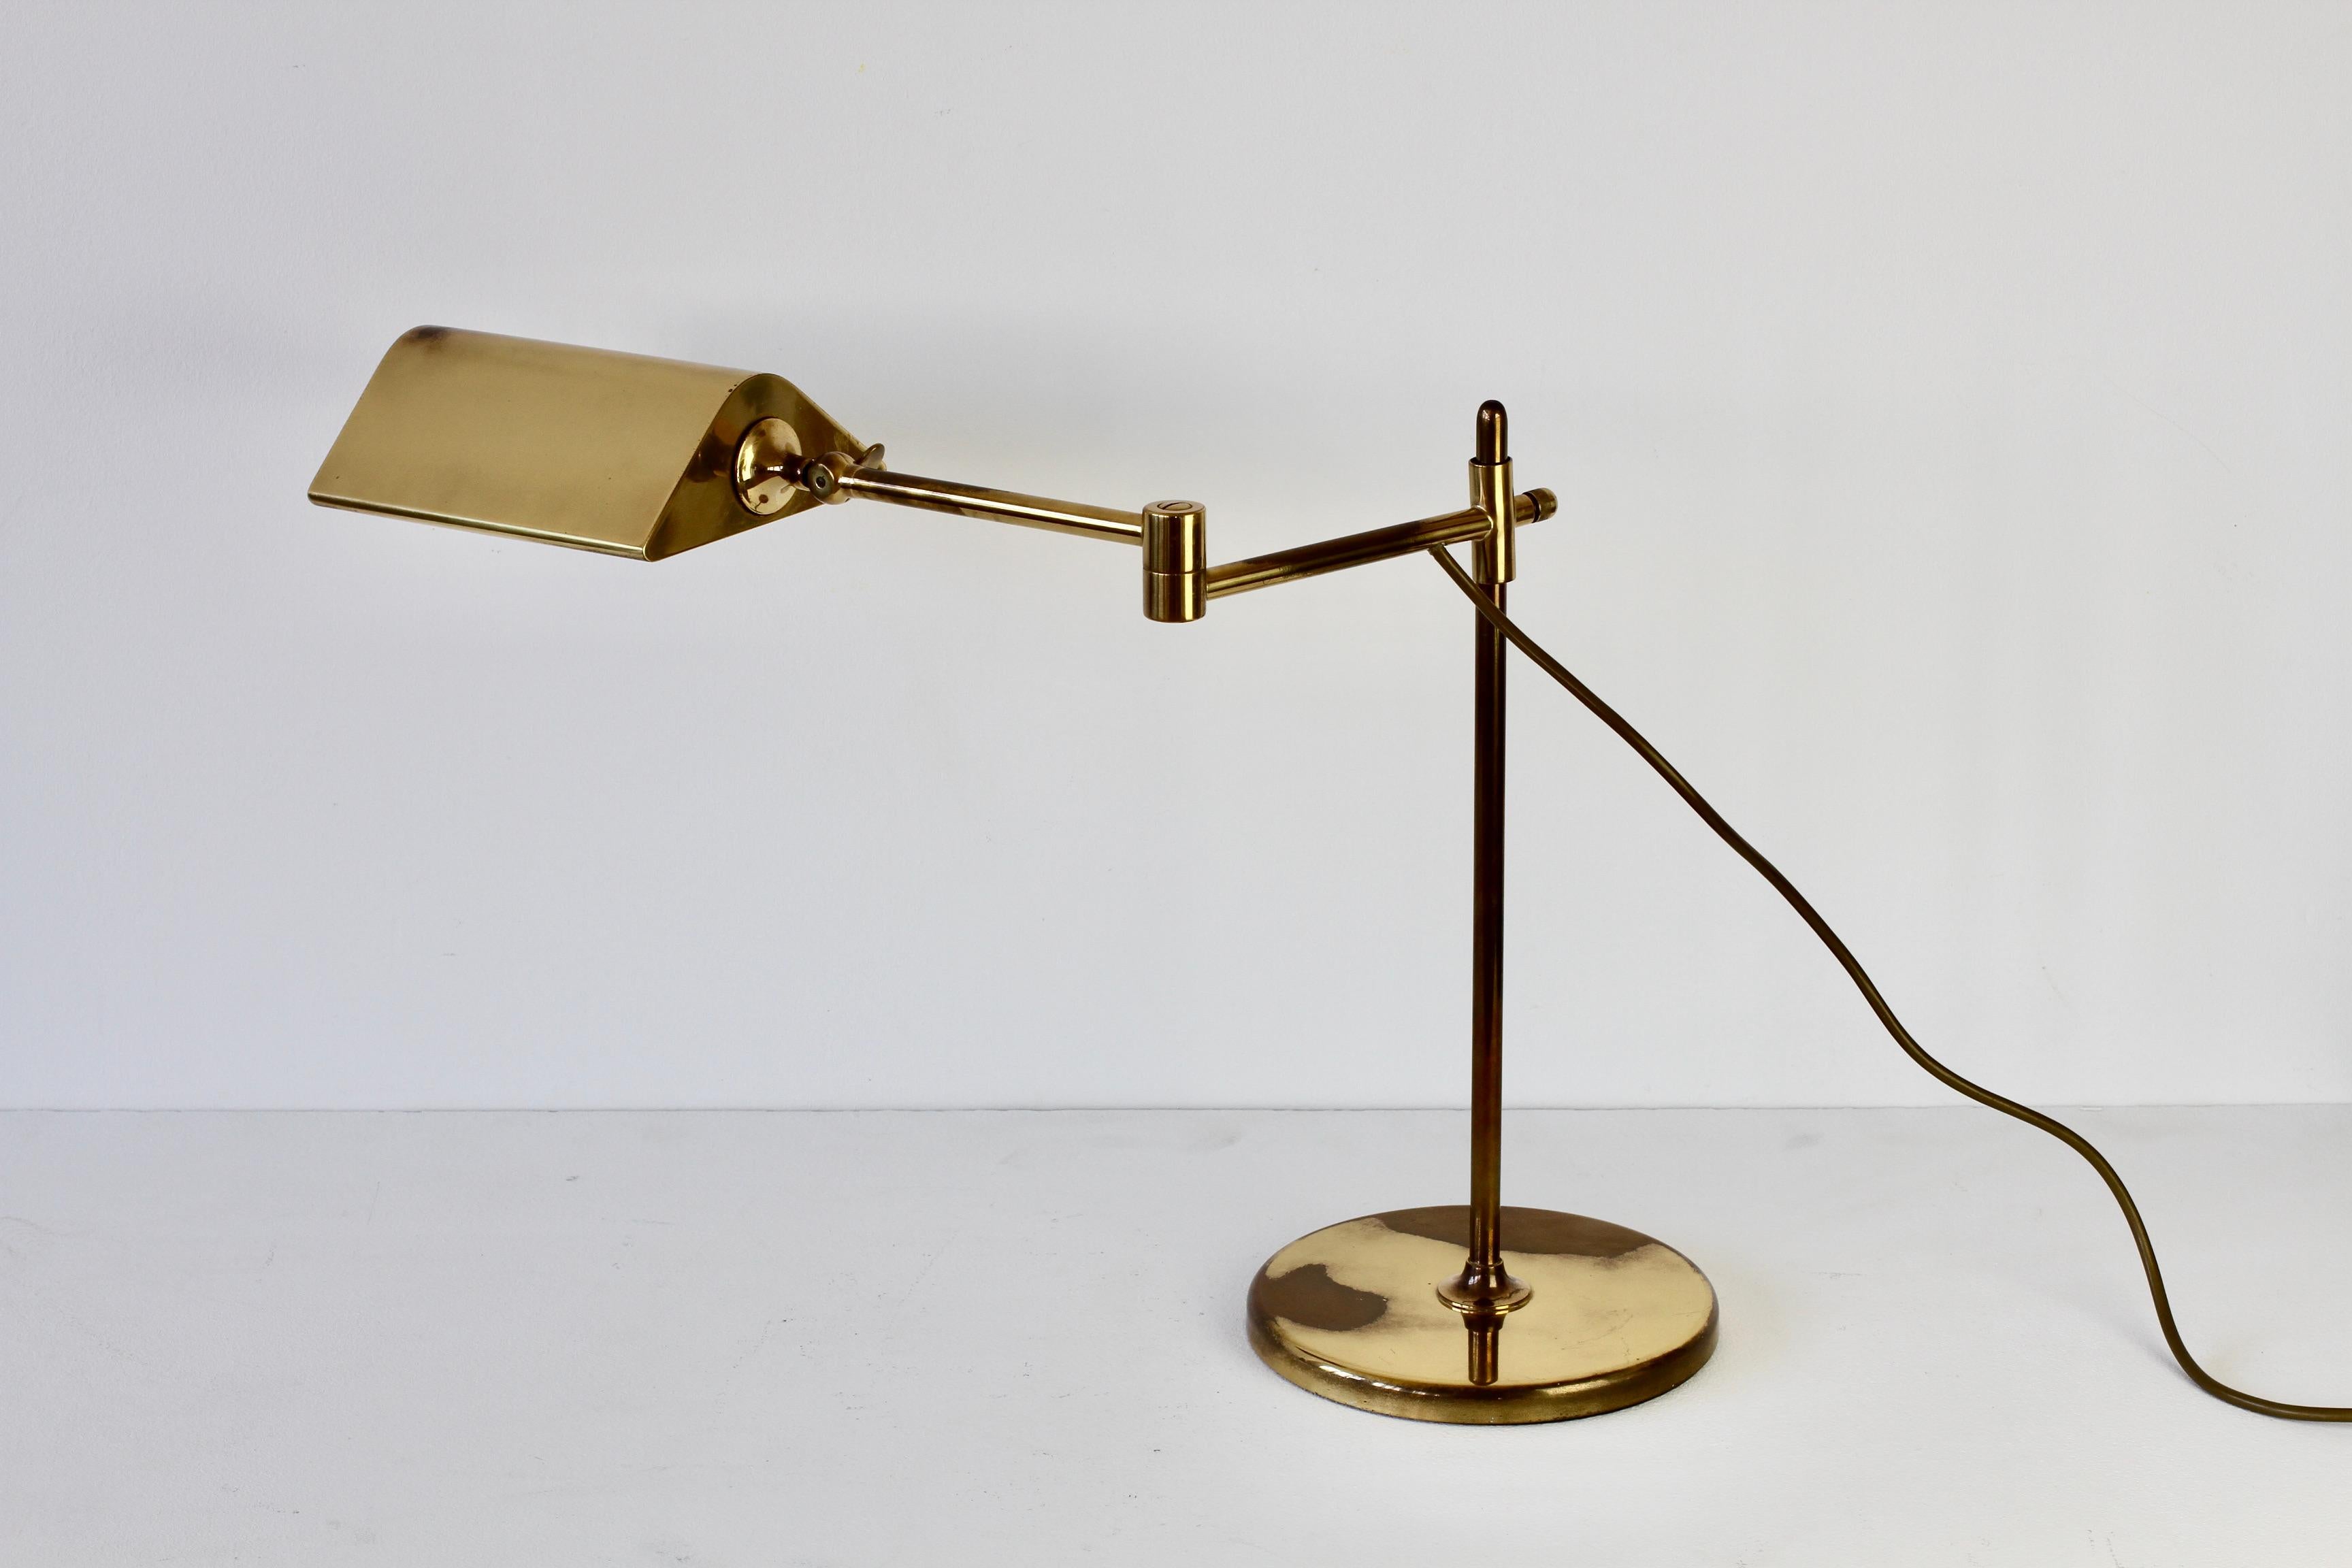 Merveilleuse lampe de table ou lampe de bureau allemande vintage de style moderne du milieu du siècle, conçue par Florian Schulz dans les années 1970. Cette lampe a été fabriquée vers les années 1970 et est un modèle assez rare avec le bras